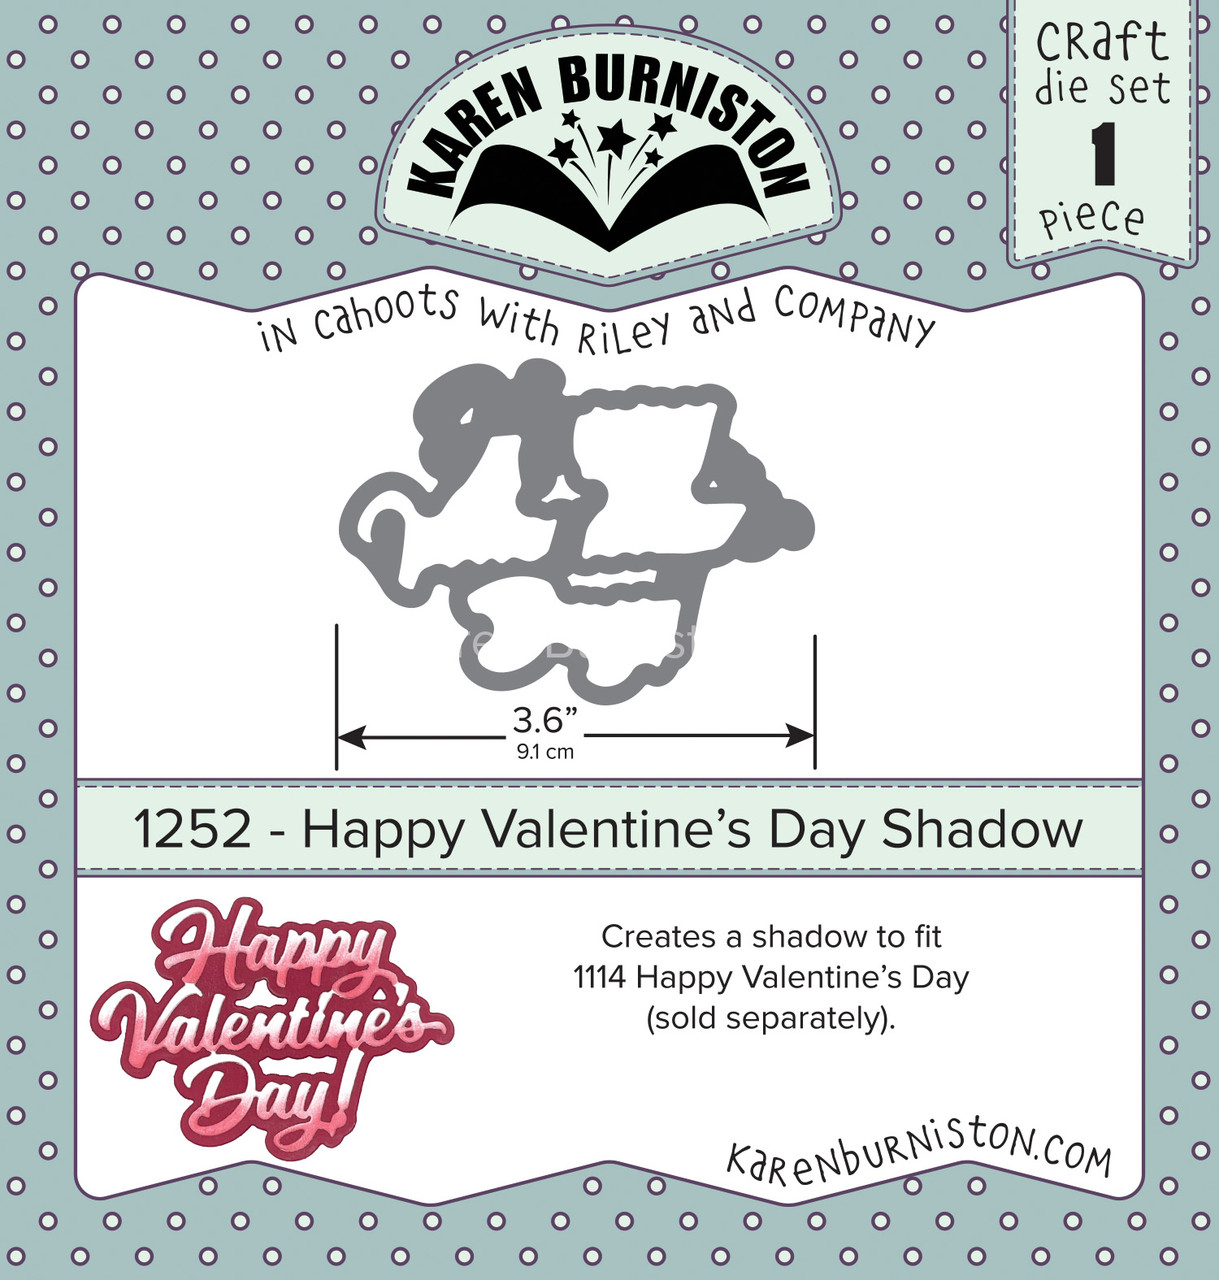 Happy Valentine's Day Shadow